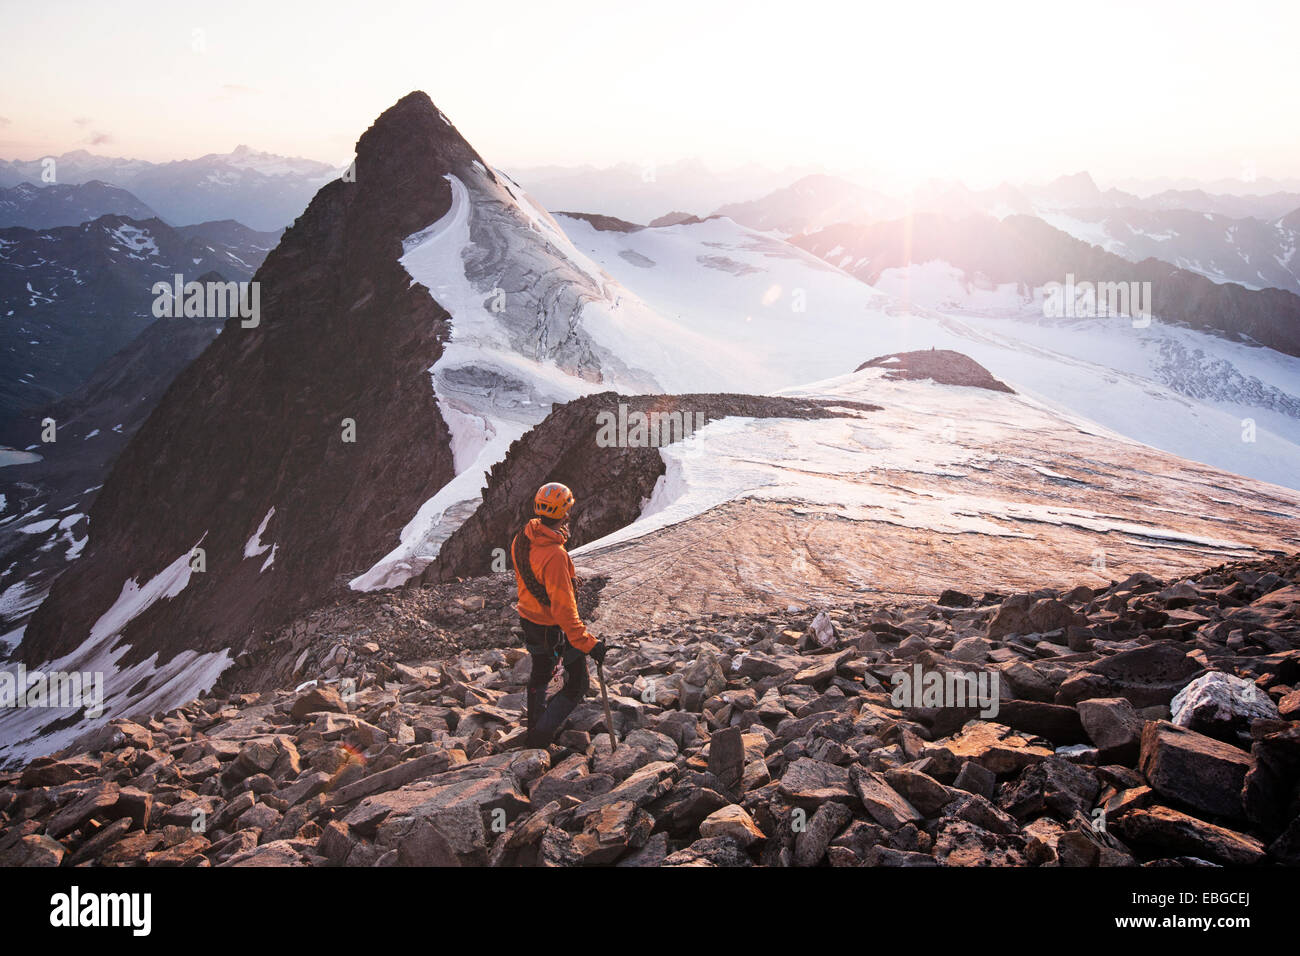 Bergsteiger auf dem Gipfel des Berges Wilder Pfaff stehend und mit Blick auf den Sonnenuntergang, Stubaier Alpen, links die Stockfoto